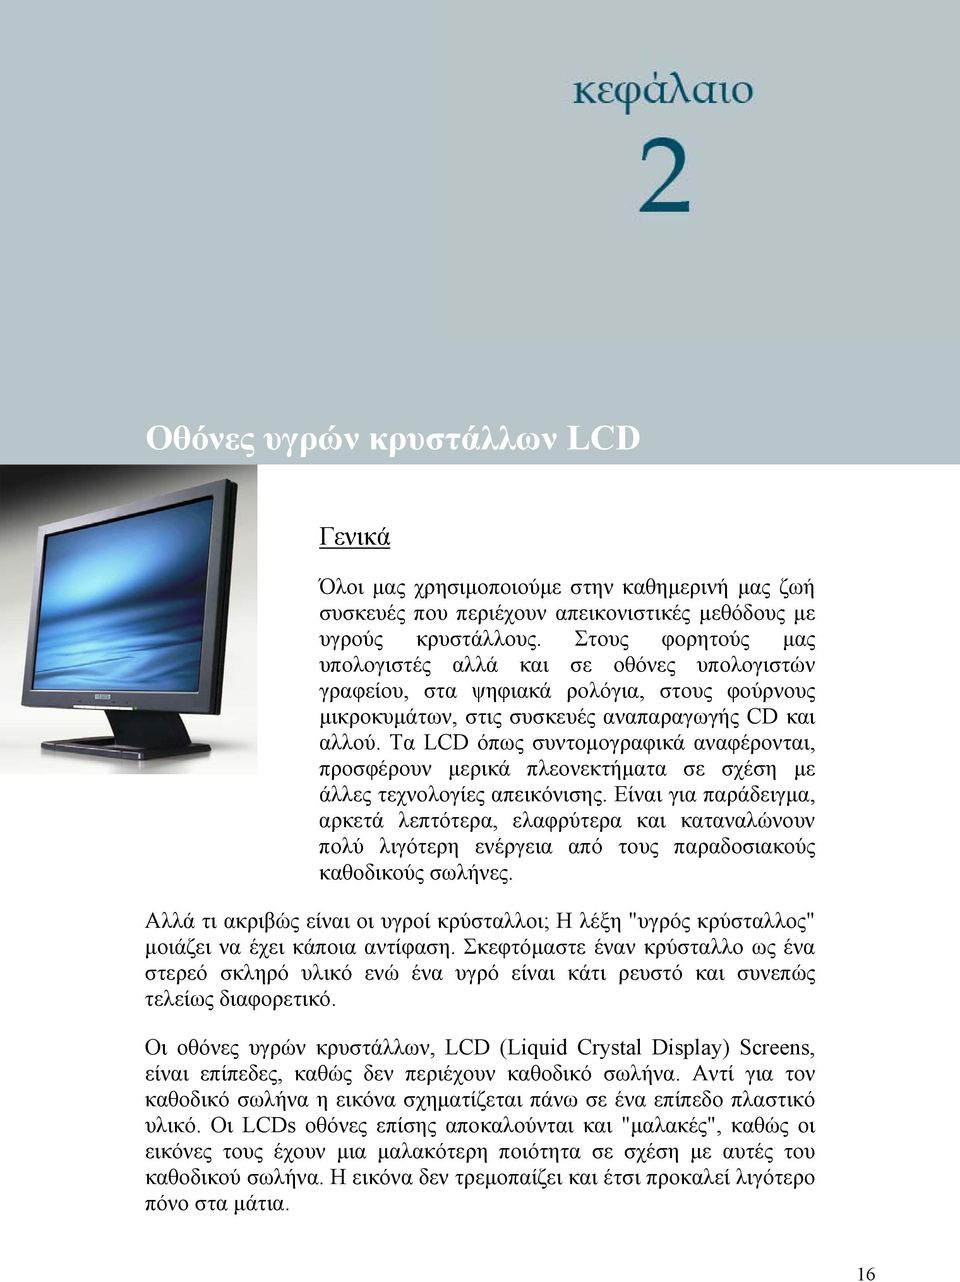 Τα LCD όπως συντομογραφικά αναφέρονται, προσφέρουν μερικά πλεονεκτήματα σε σχέση με άλλες τεχνολογίες απεικόνισης.